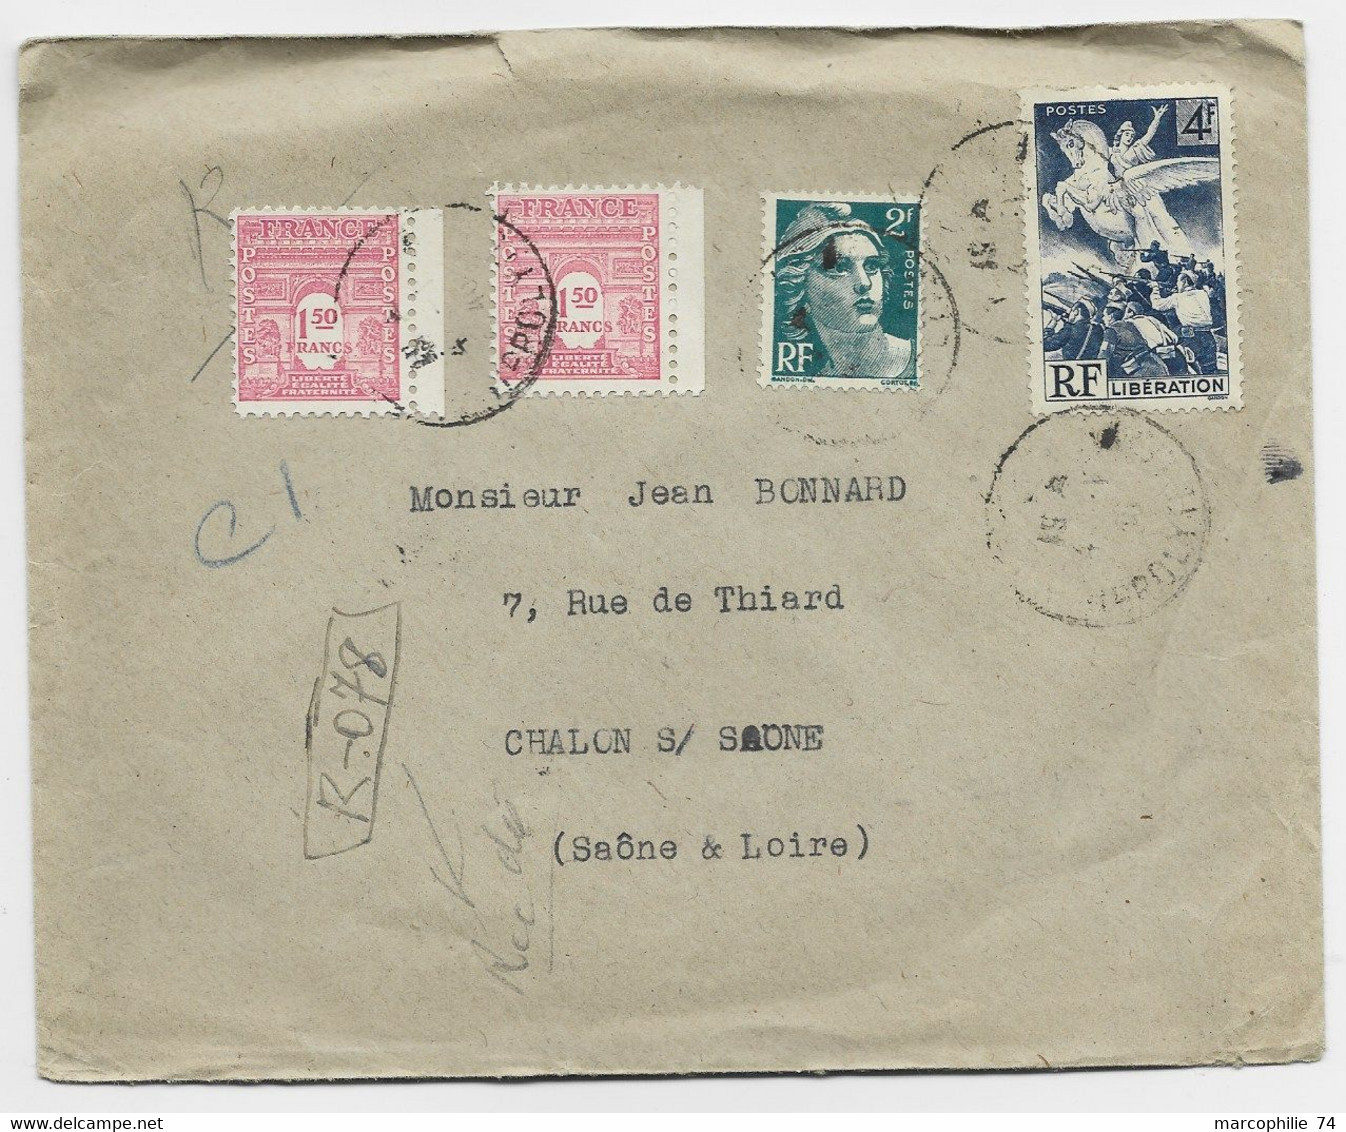 FRANCE ARC TRIOMPHE 1FR50 ROSEX2+ GANDON 2FR+ 4FR LIBERATION LETTRE REC PROVISOIRE PARIS 1946 AU TARIF - 1944-45 Arc Of Triomphe